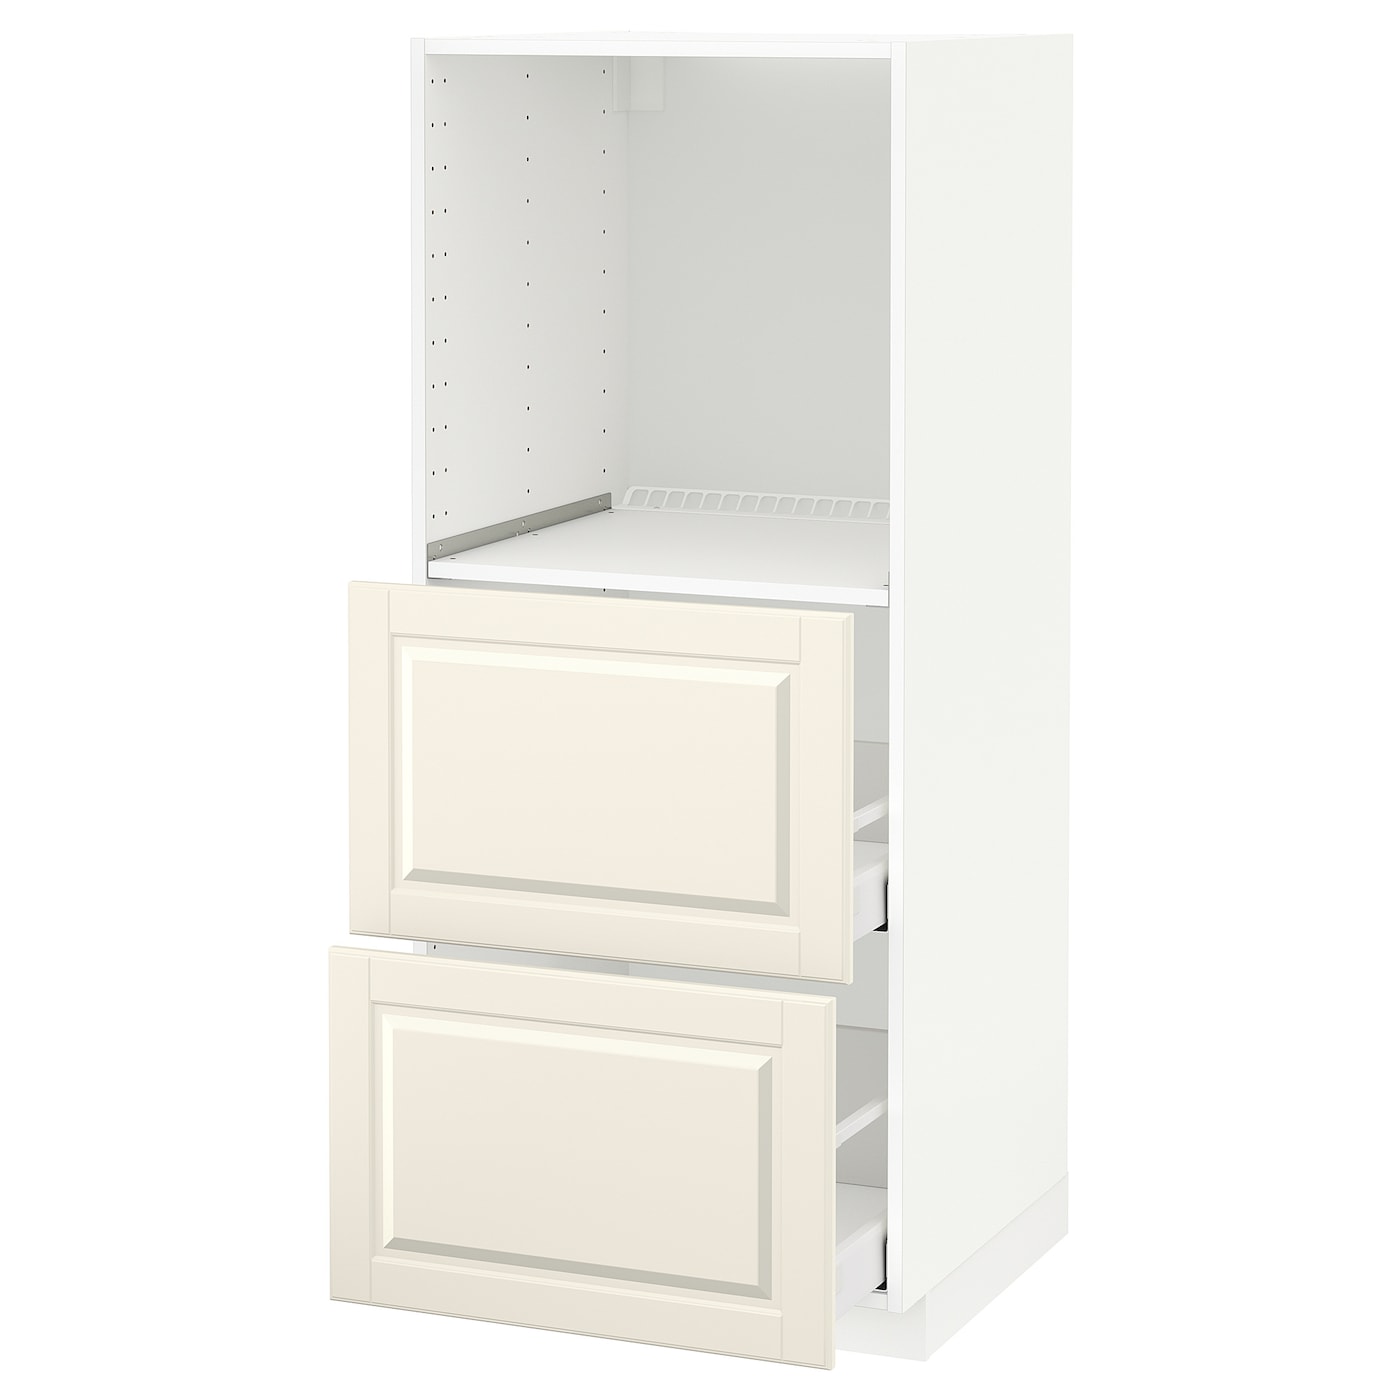 Напольный шкаф - IKEA METOD MAXIMERA, 148x62x60см, белый/светло-бежевый, МЕТОД МАКСИМЕРА ИКЕА